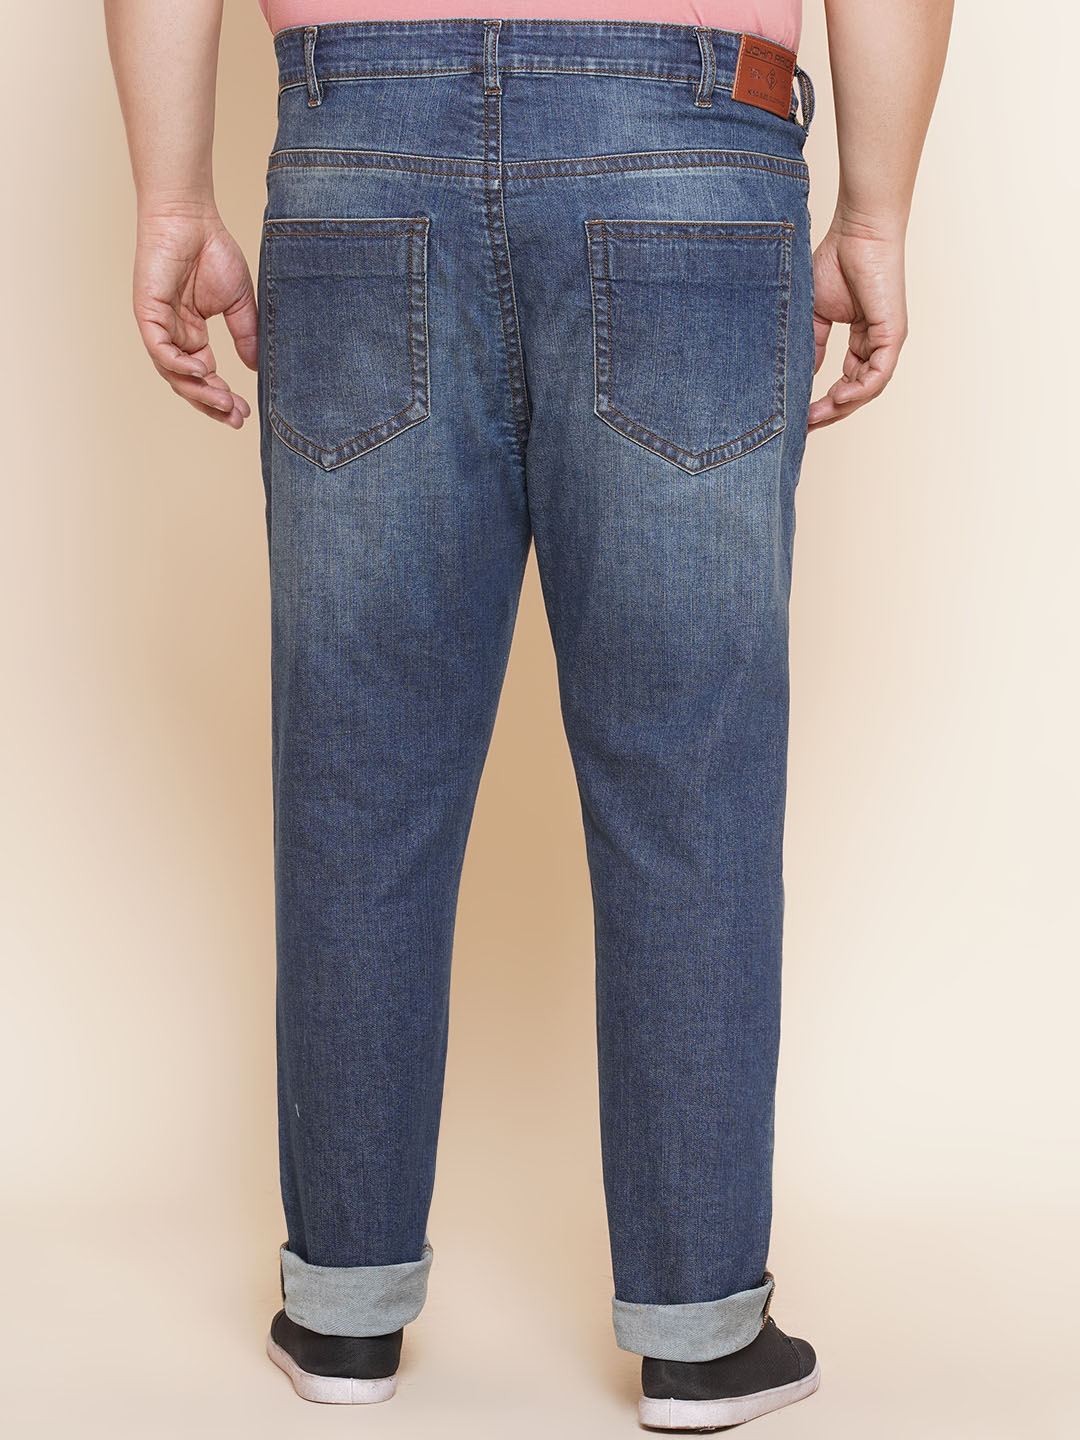 bottomwear/jeans/JPJ27019/jpj27019-5.jpg